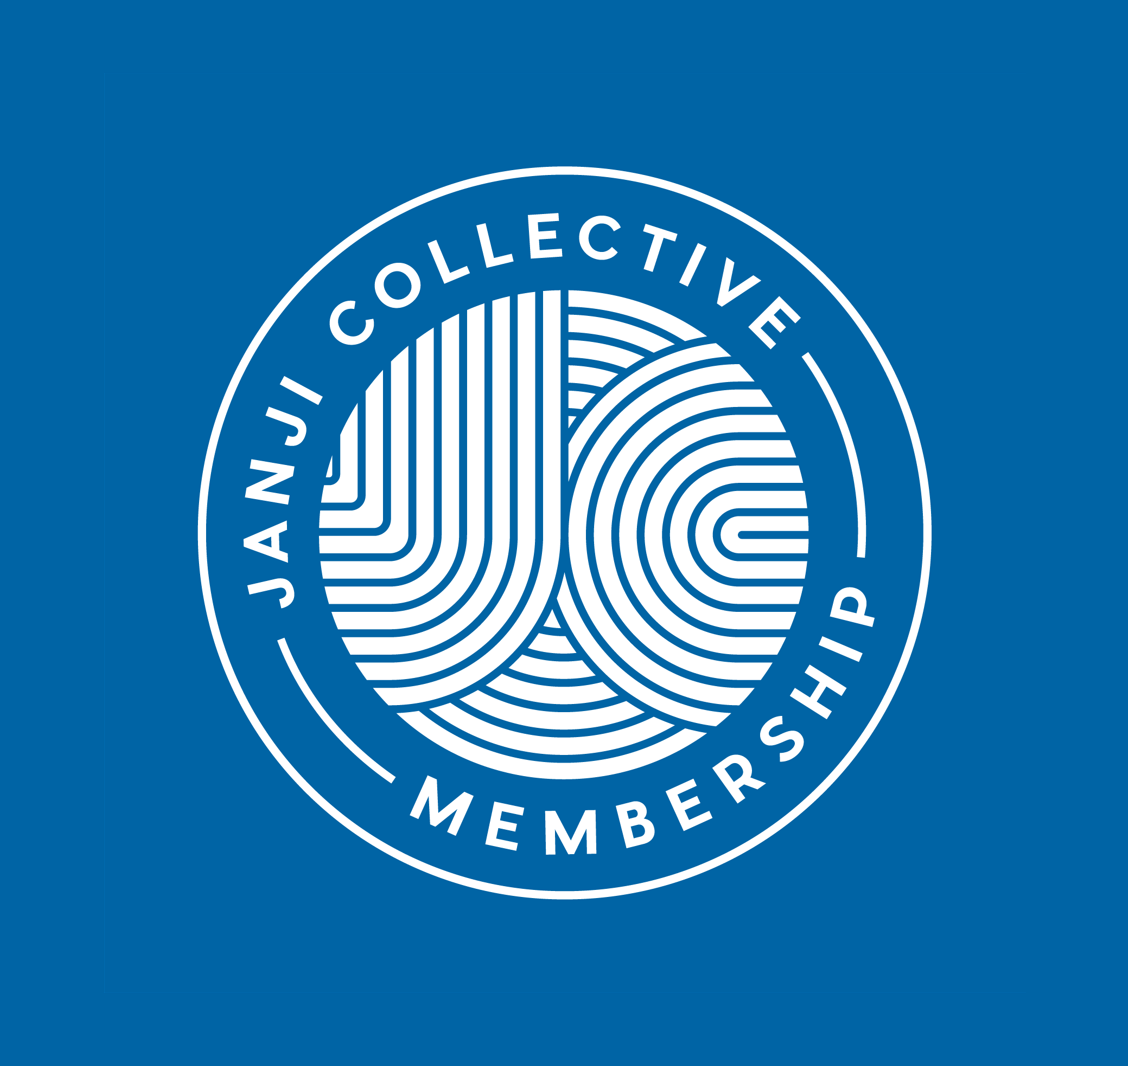 Janji Collective Membership